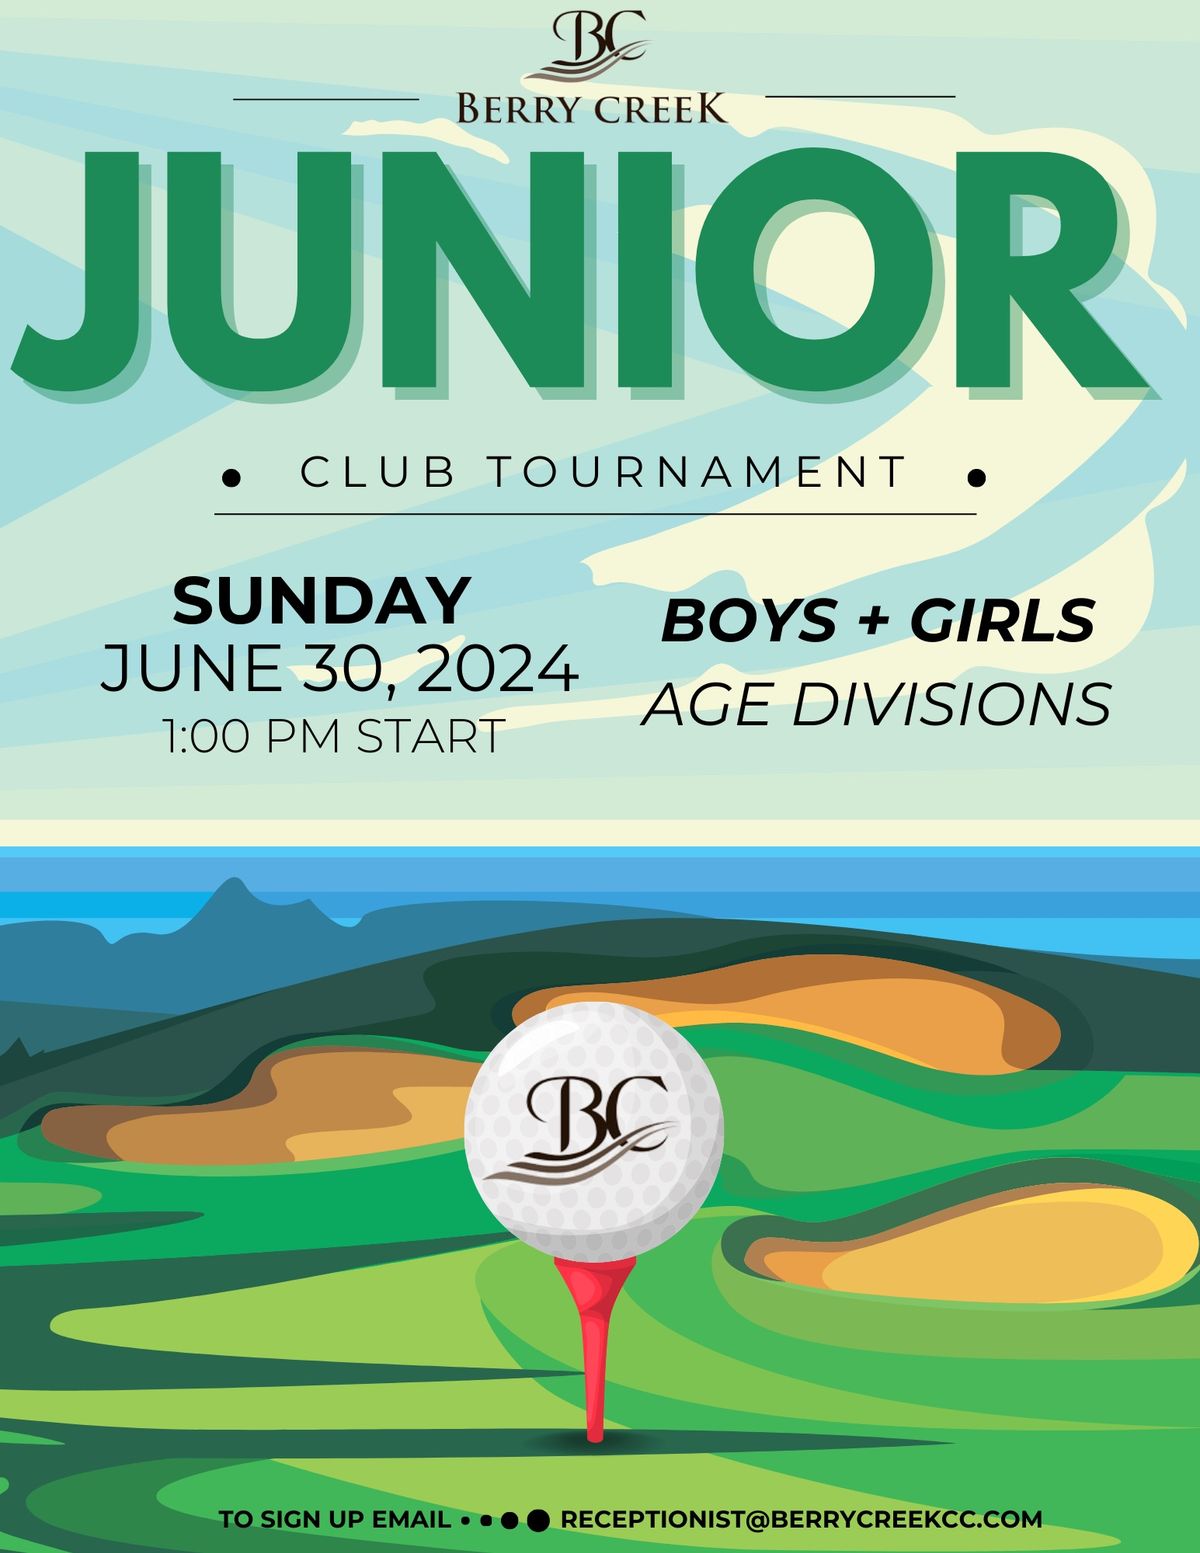 Berry Creek Junior Club Tournament